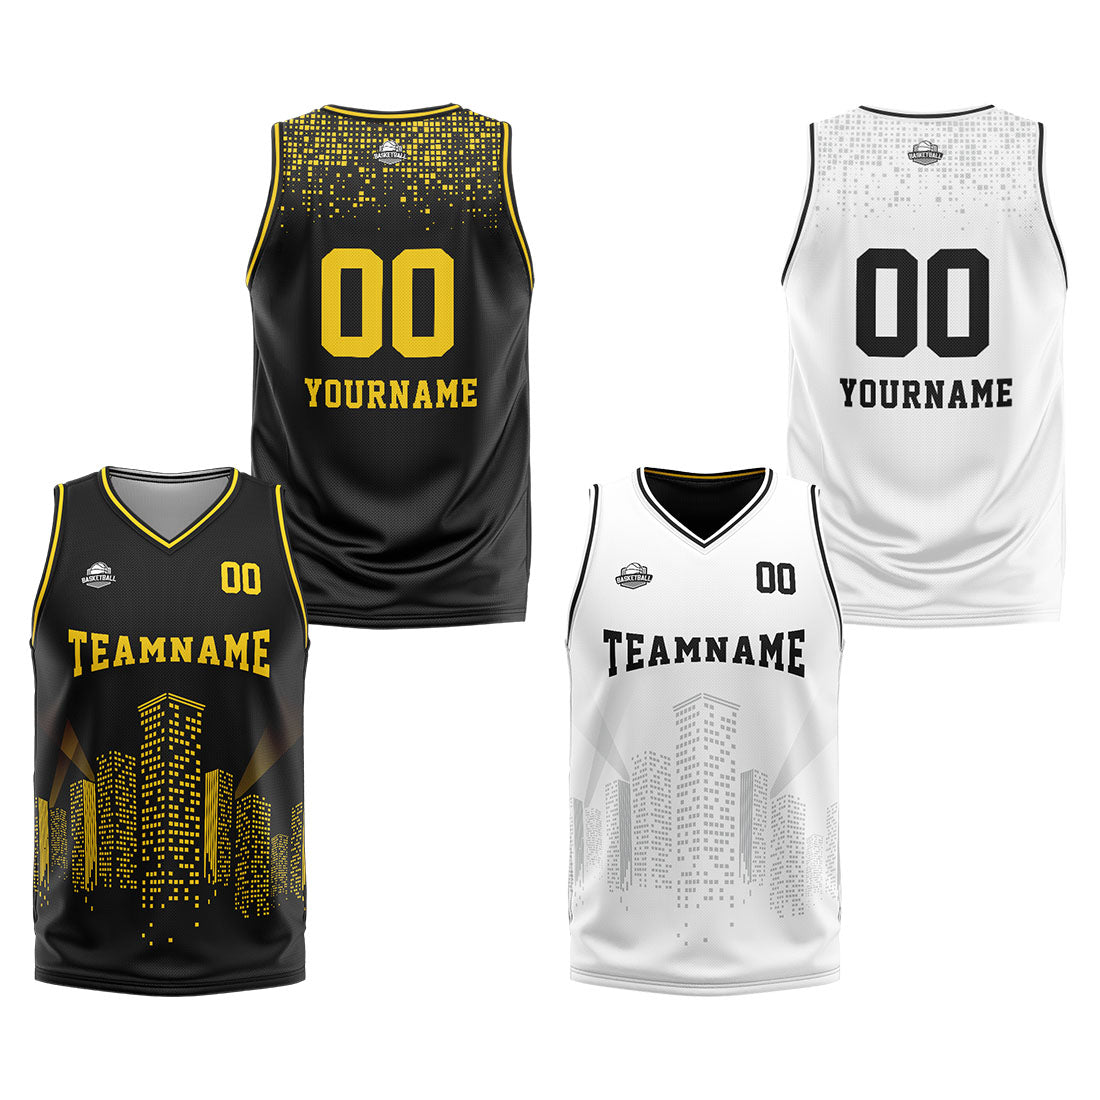 Benutzerdefinierte Reversible Basketball Jersey Personalisierte Print Name Nummer Logo Schwarz-Weiß